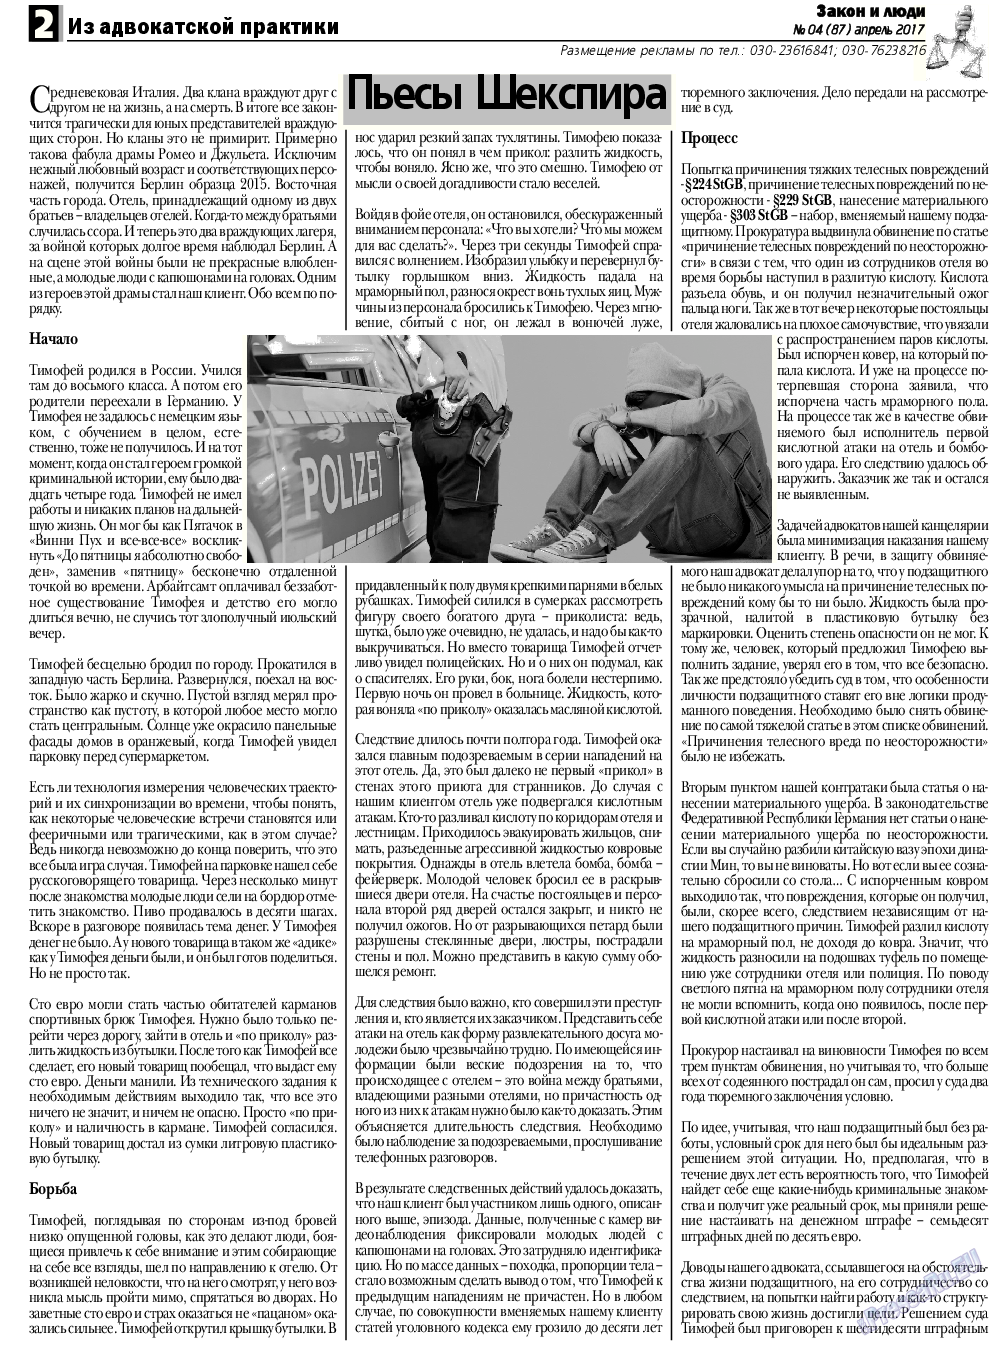 Закон и люди, газета. 2017 №4 стр.2